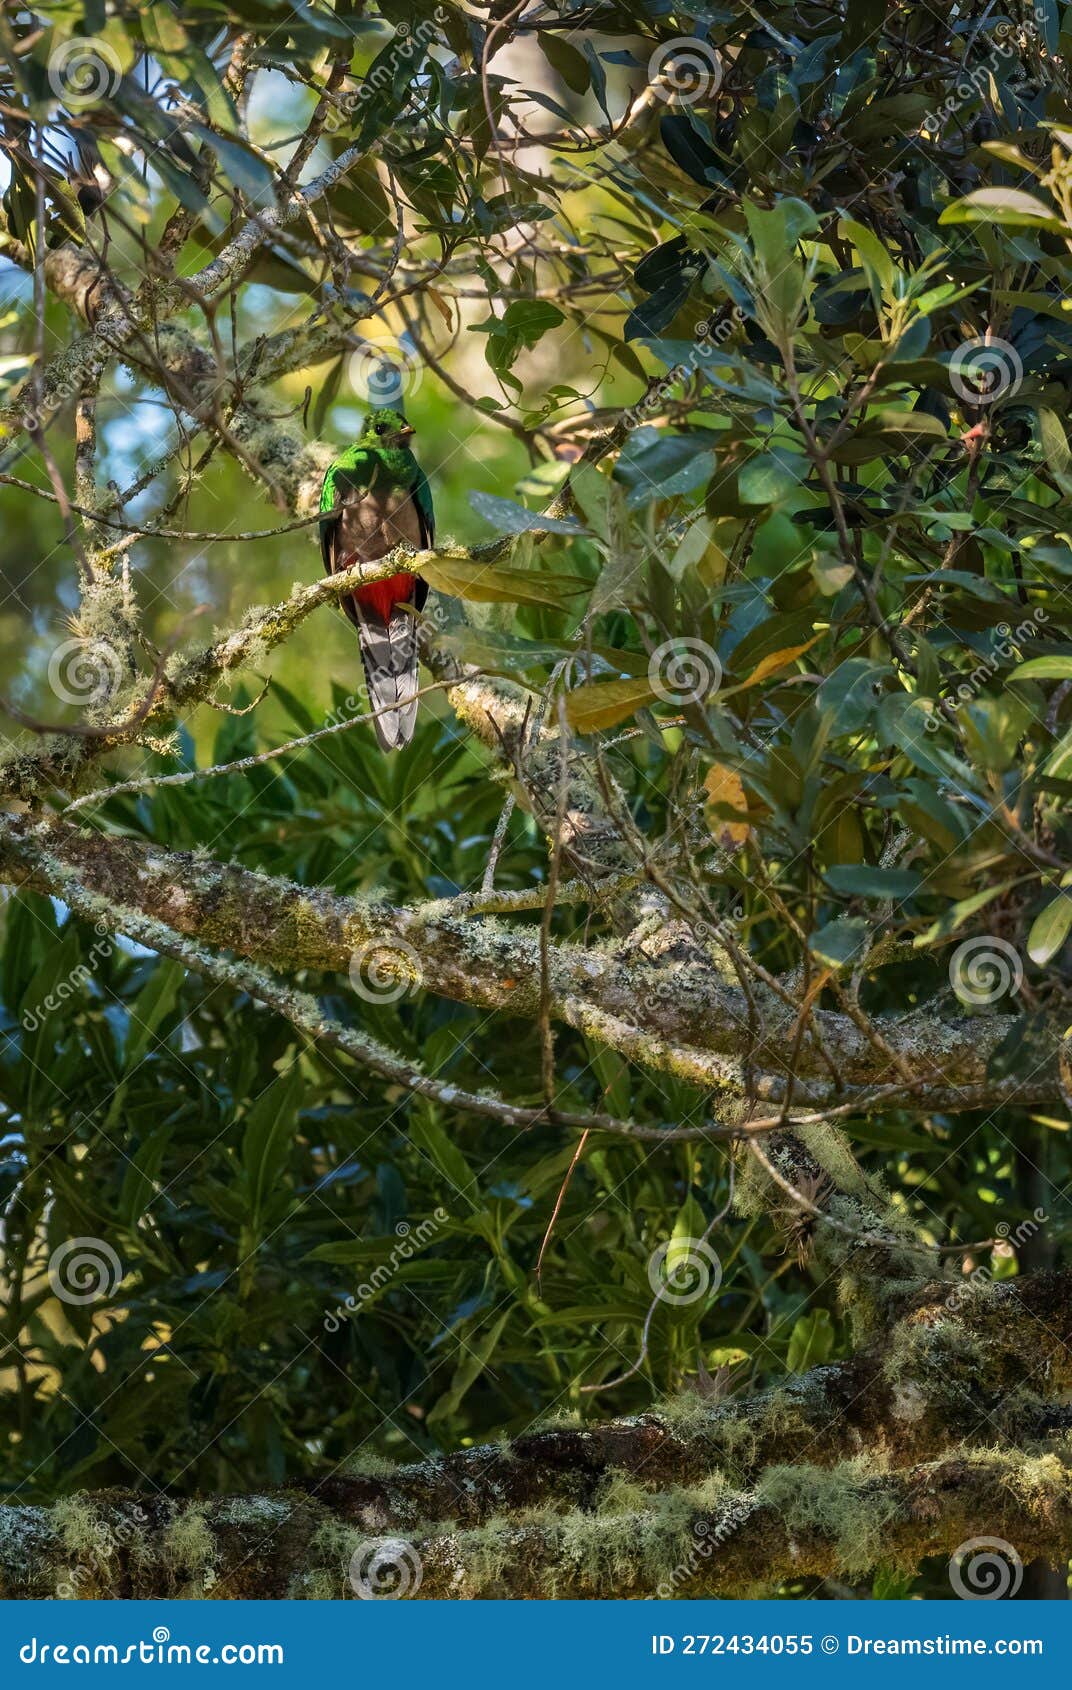 resplendent quetzal - pharomachrus mocinno